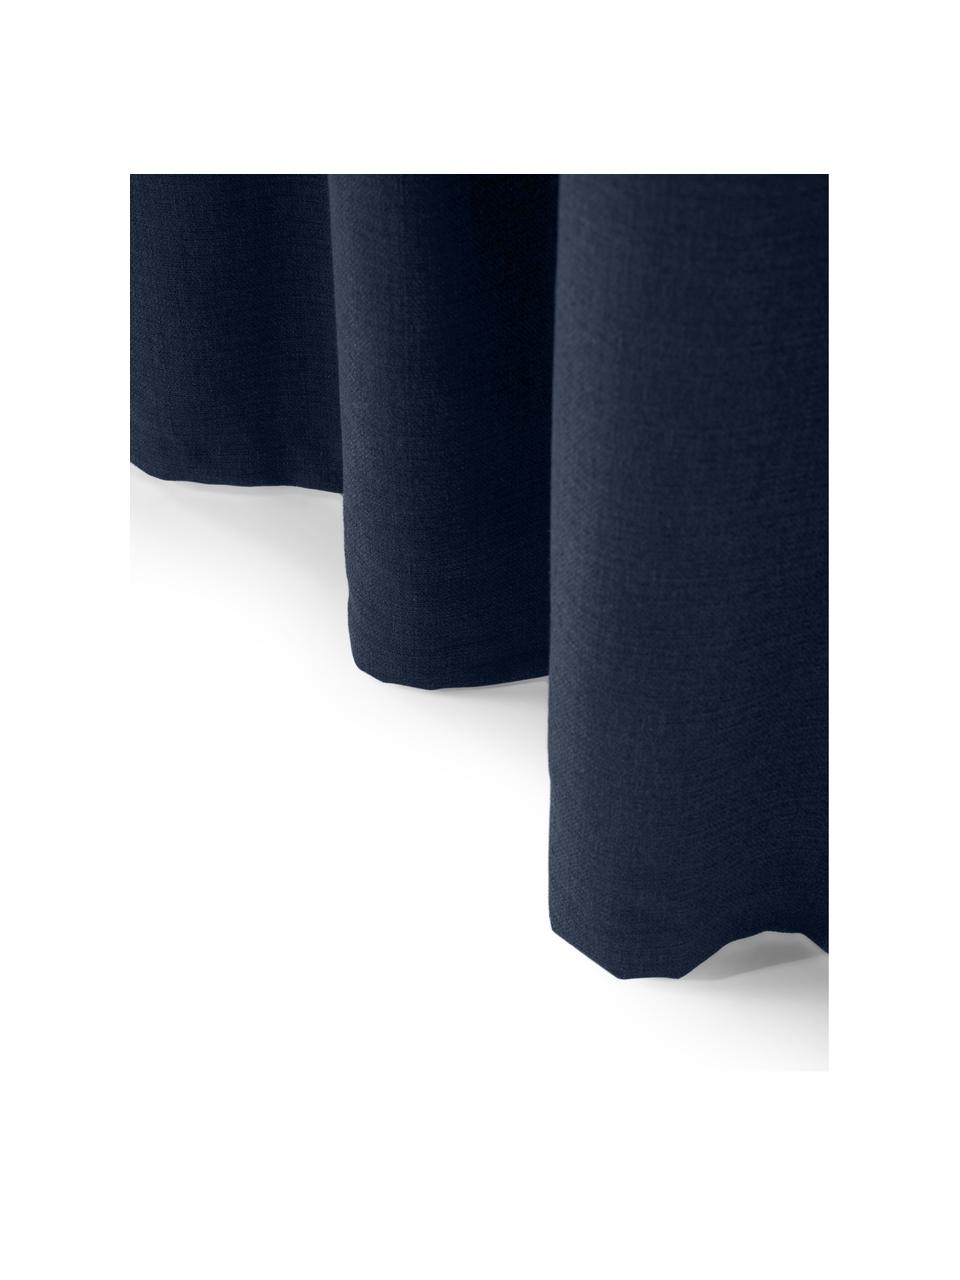 Ondoorzichtige gordijn Jensen in donkerblauw met multiband, 2 stuks, 95% polyester, 5% nylon, Donkerblauw, B 130 x L 260 cm